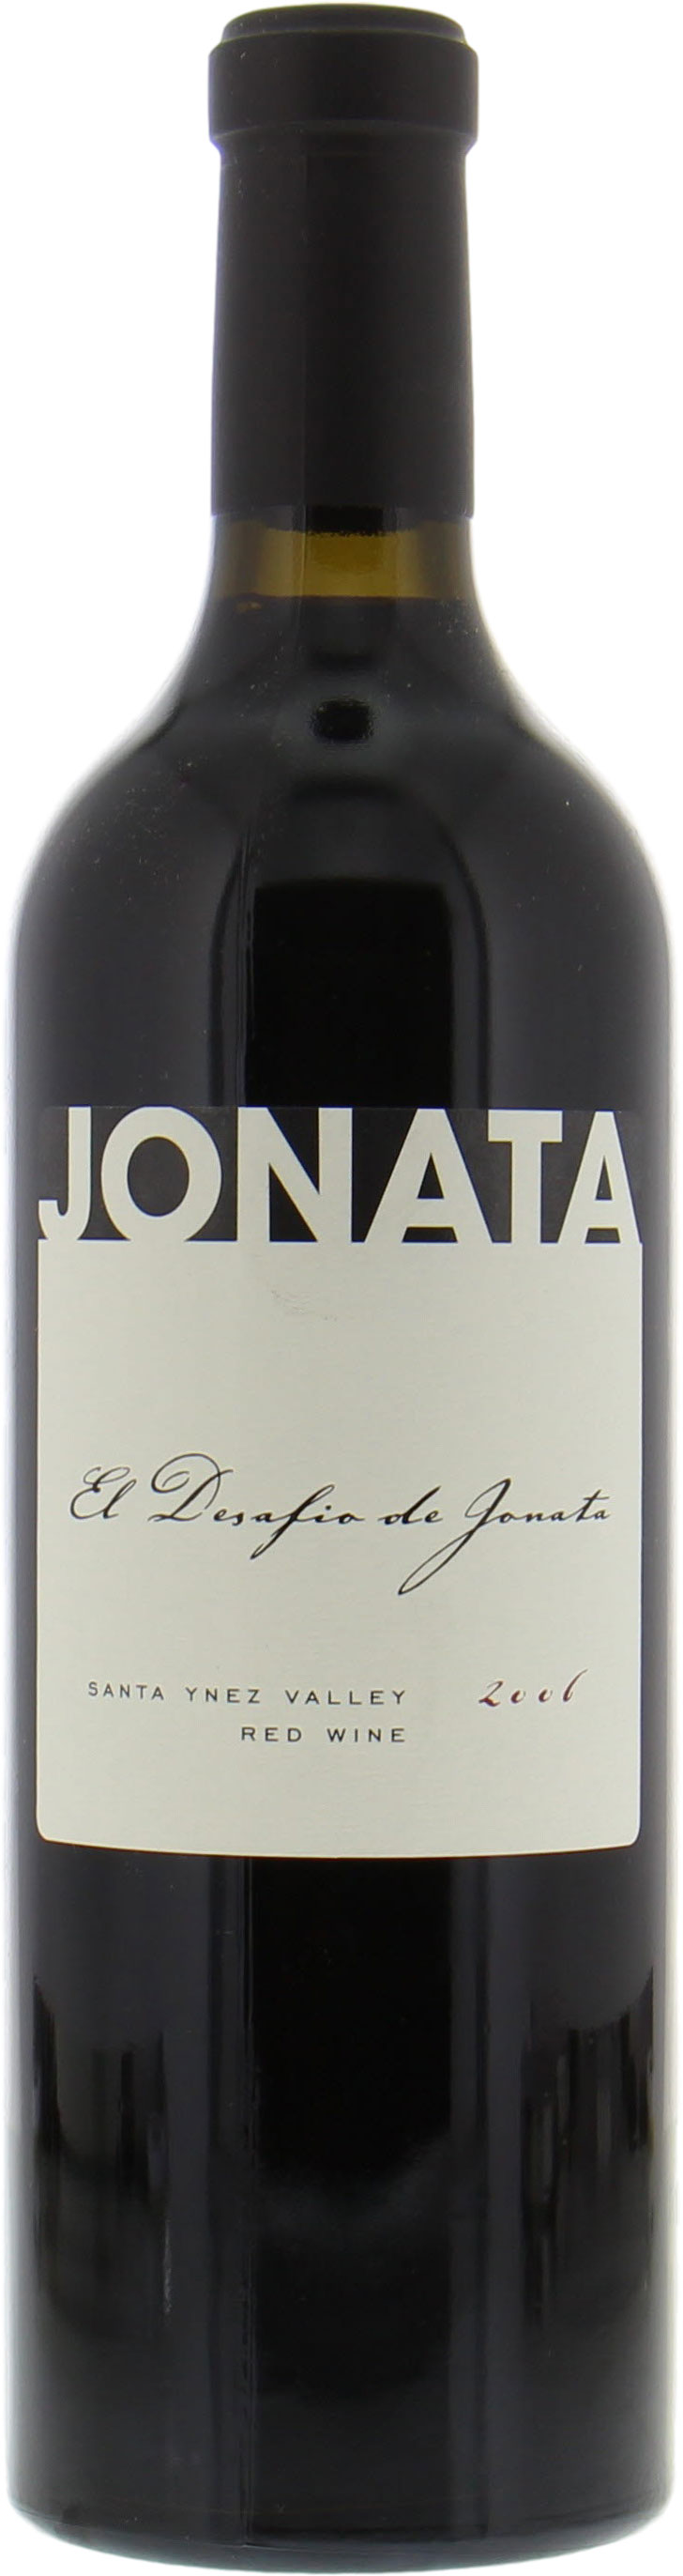 Jonata - El Desafio de Jonata 2006